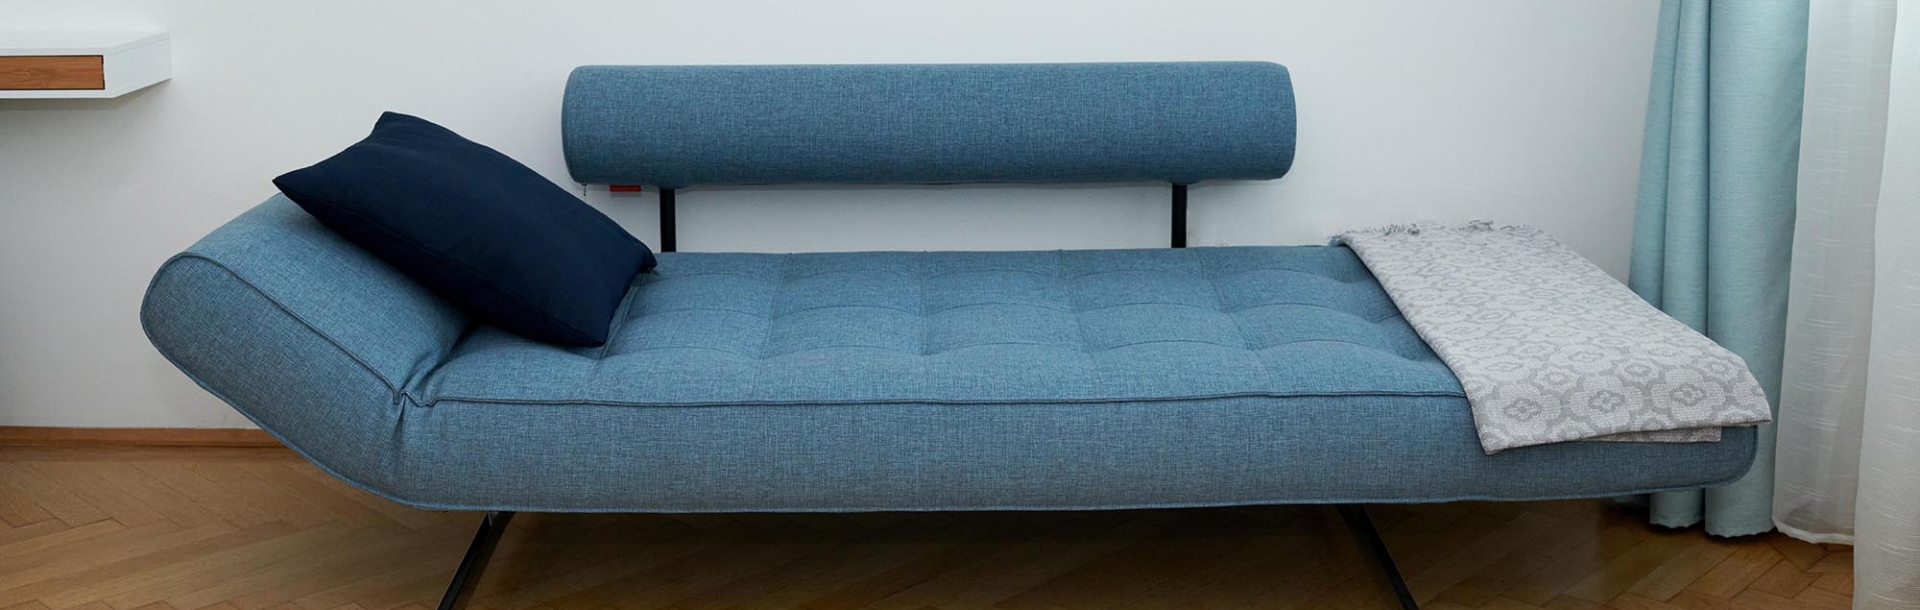 blaue Couch mit Polster für analytische Therapie